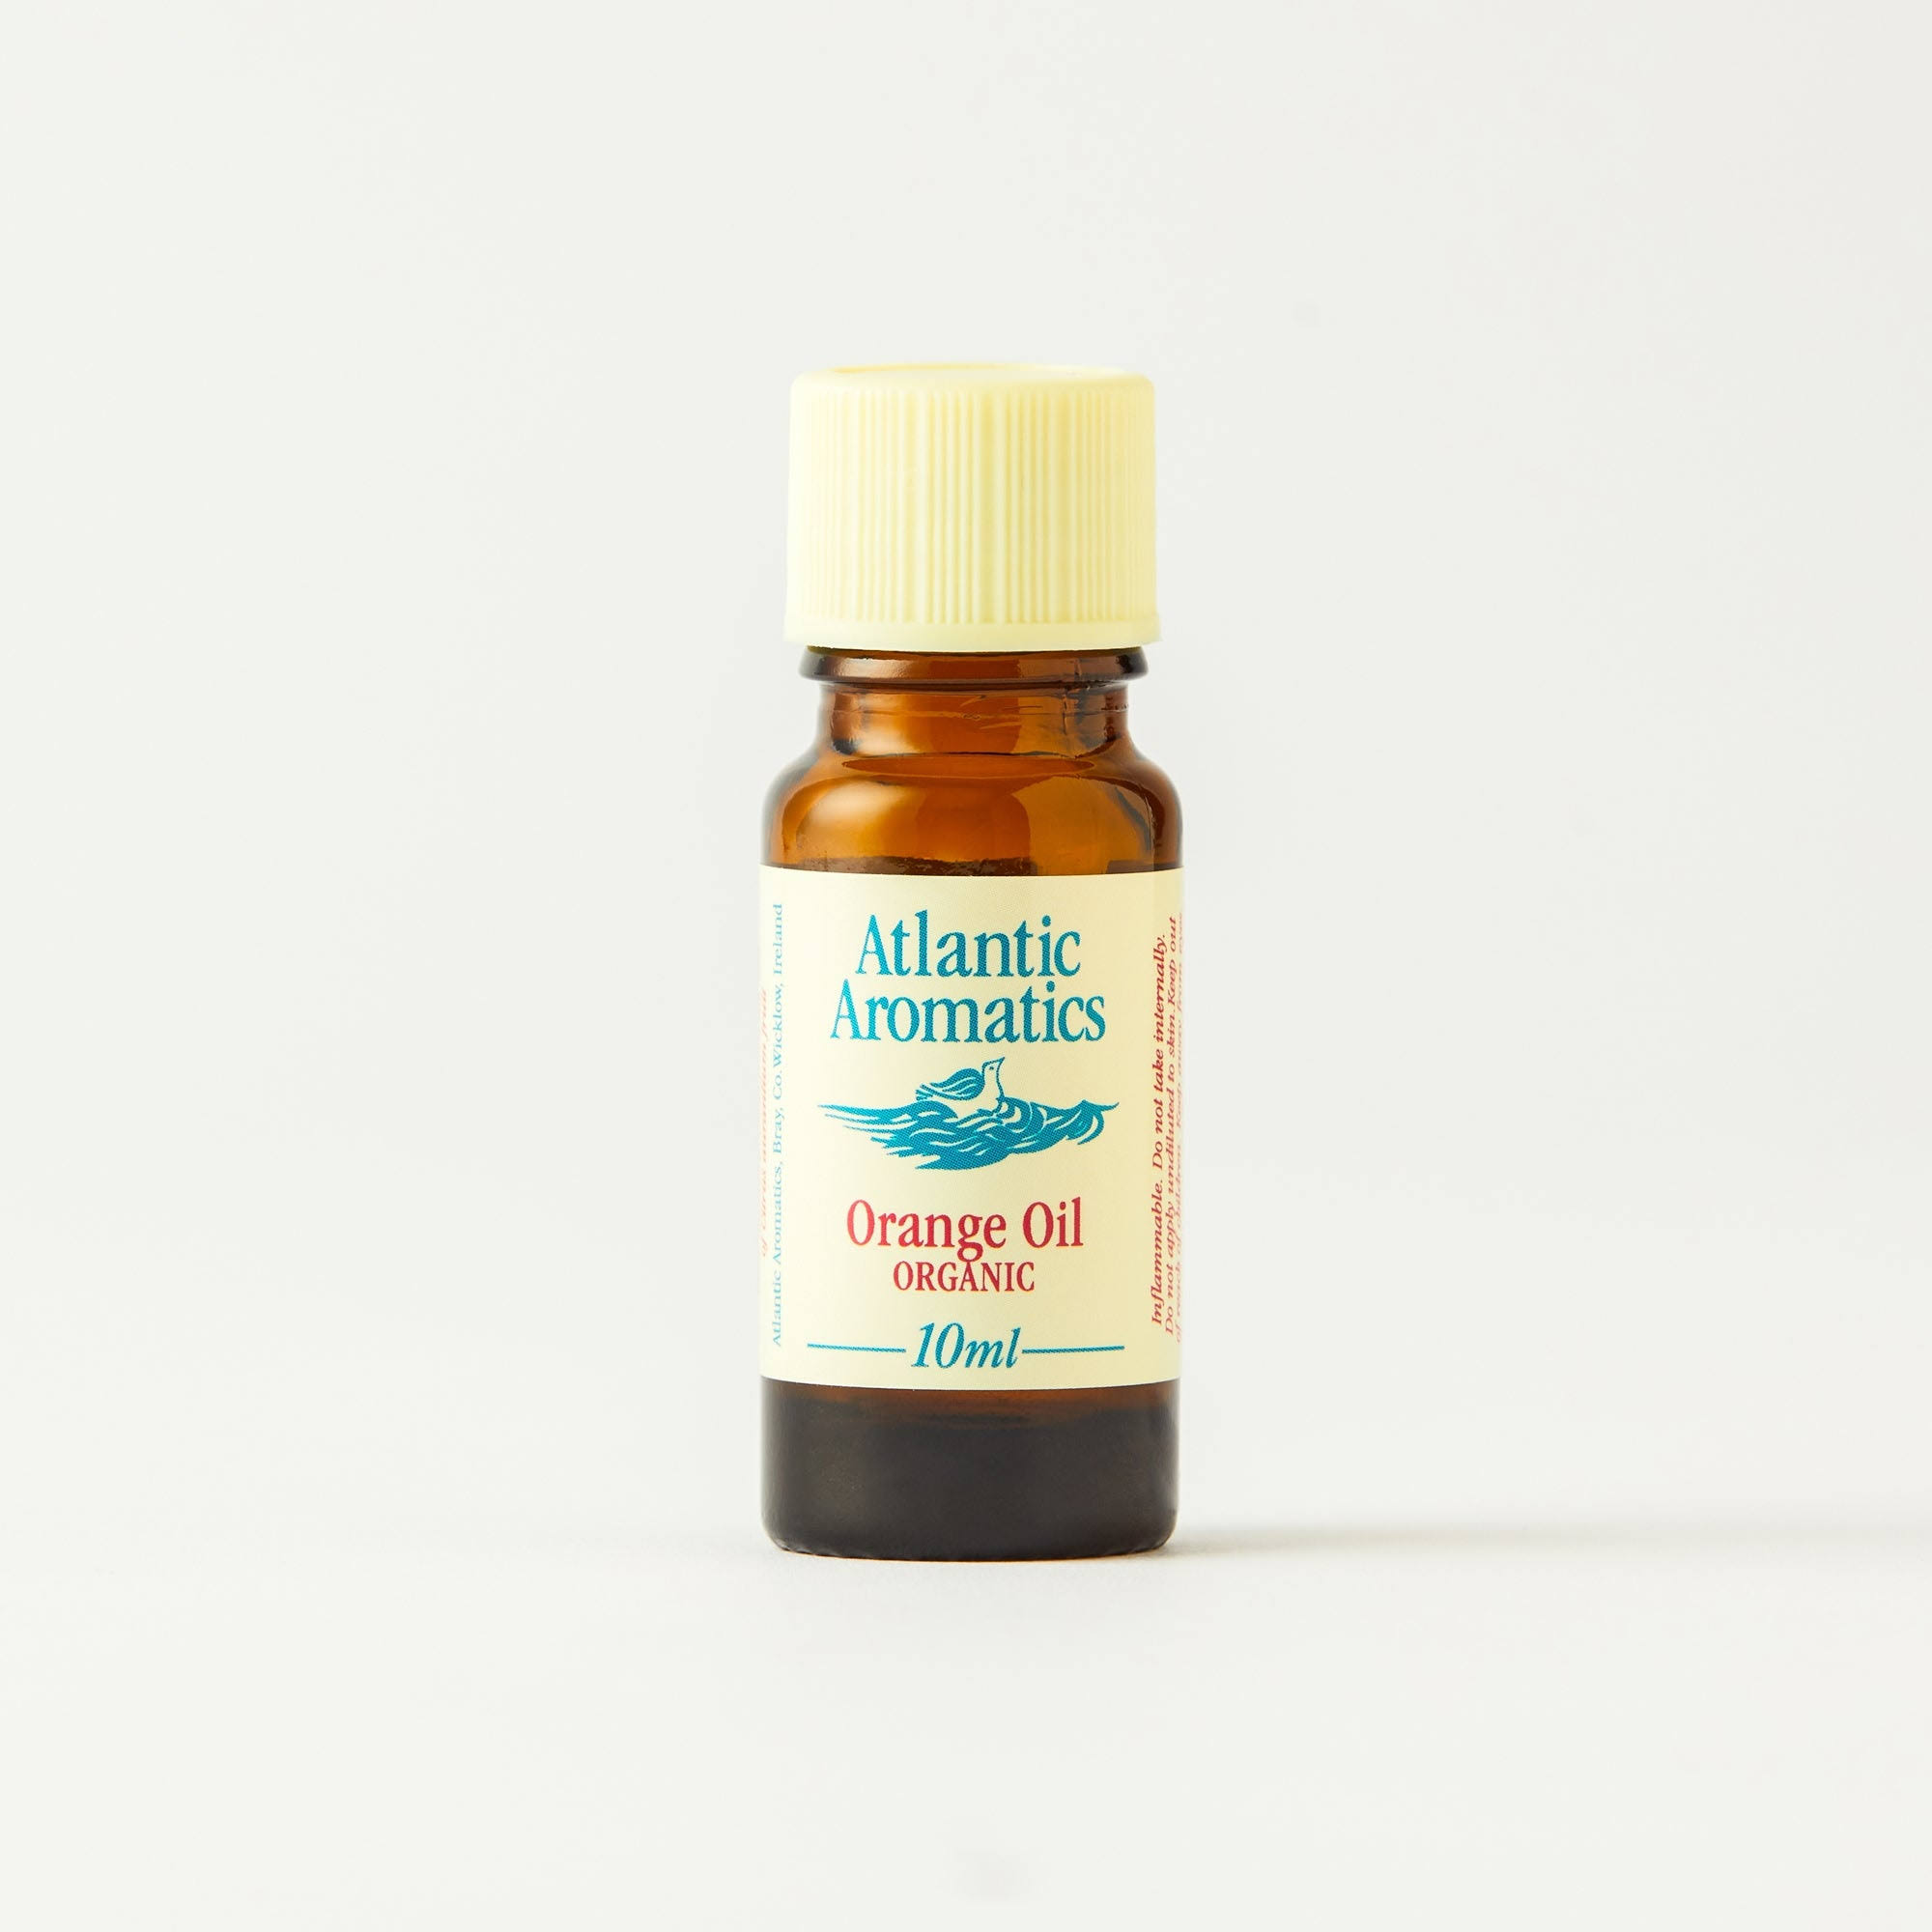 Atlantic Aromatics Orange Oil - 10ml